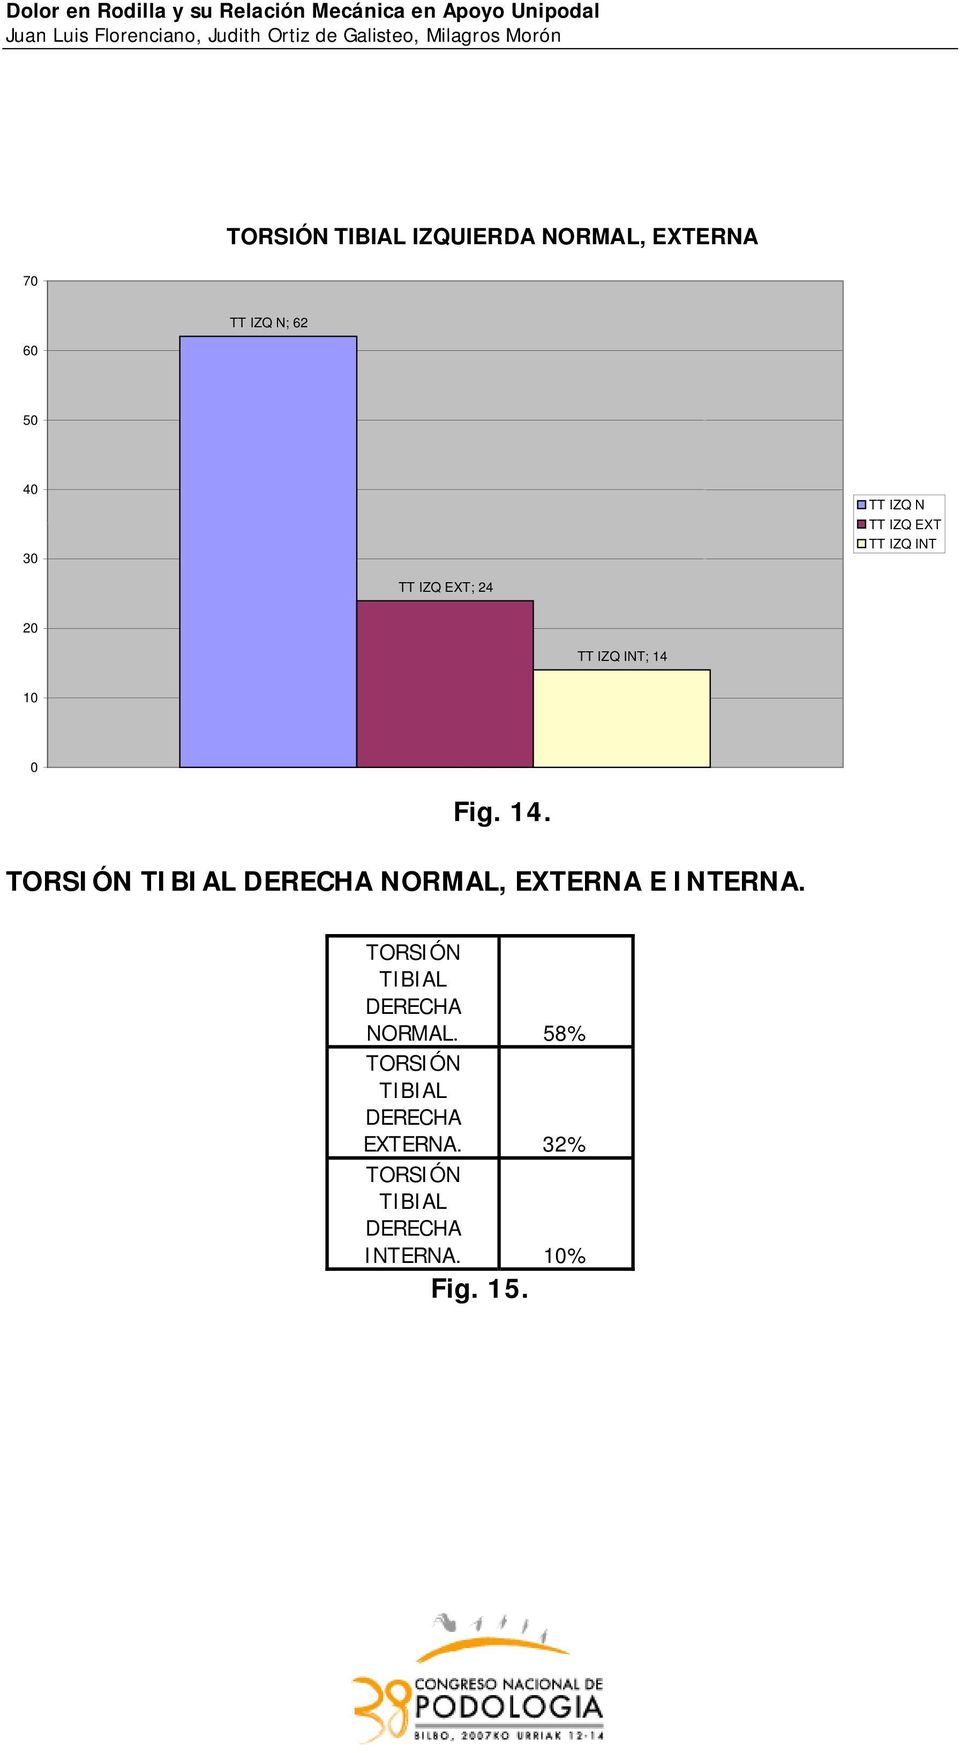 10 0 Fig. 14. TORSIÓN TIBIAL DERECHA NORMAL, EXTERNA E INTERNA.